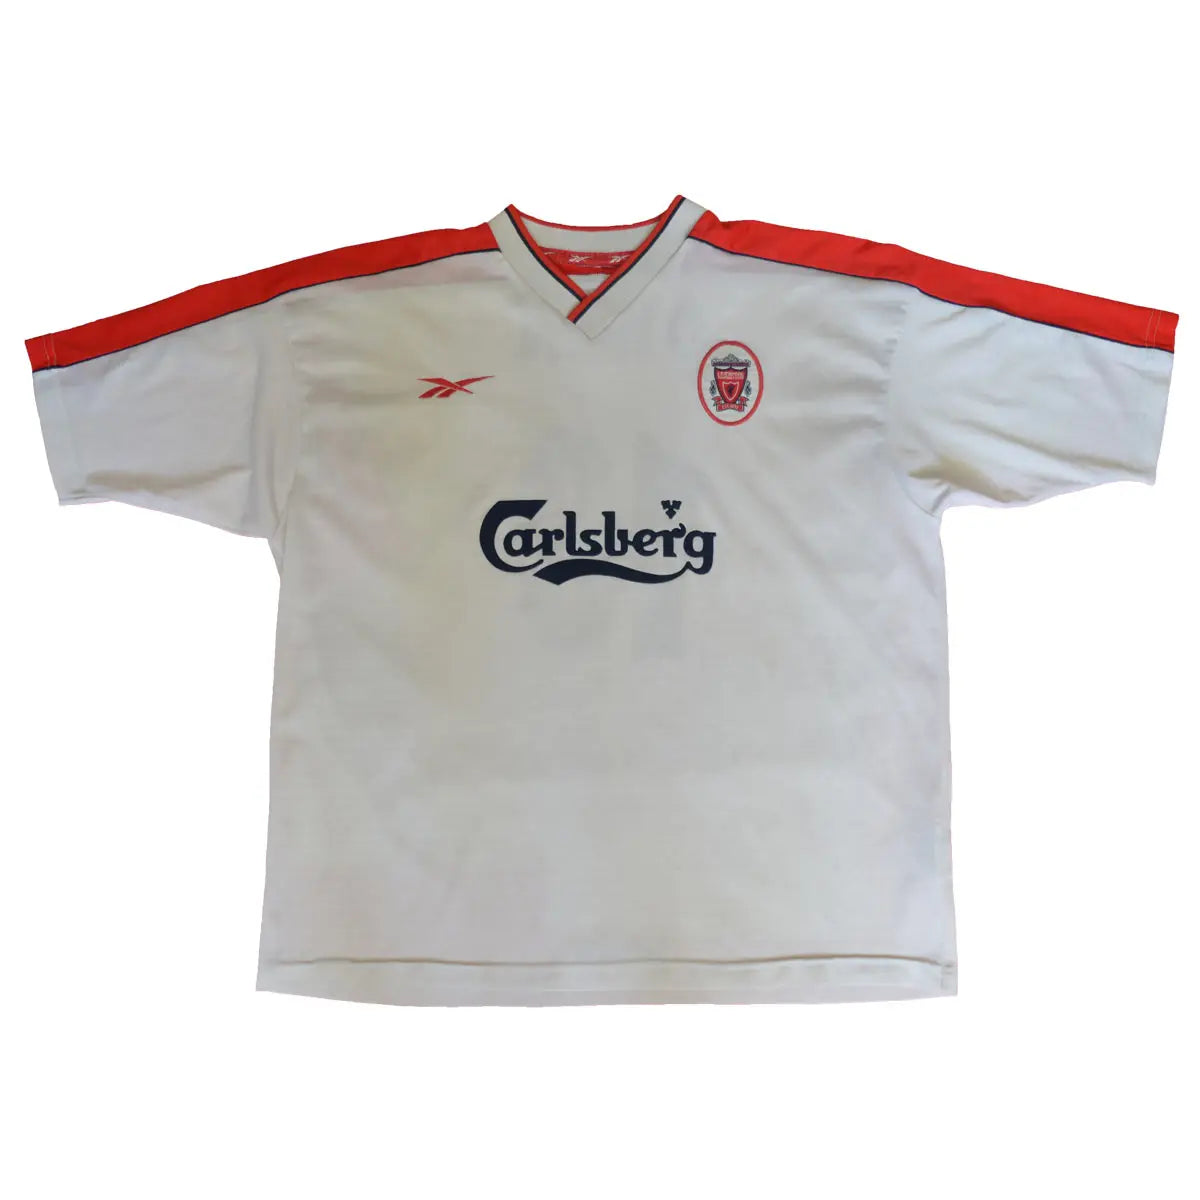 Maillot Reebok rétro/vintage authentique blanc et rouge liverpool de 1999-2000 Owen